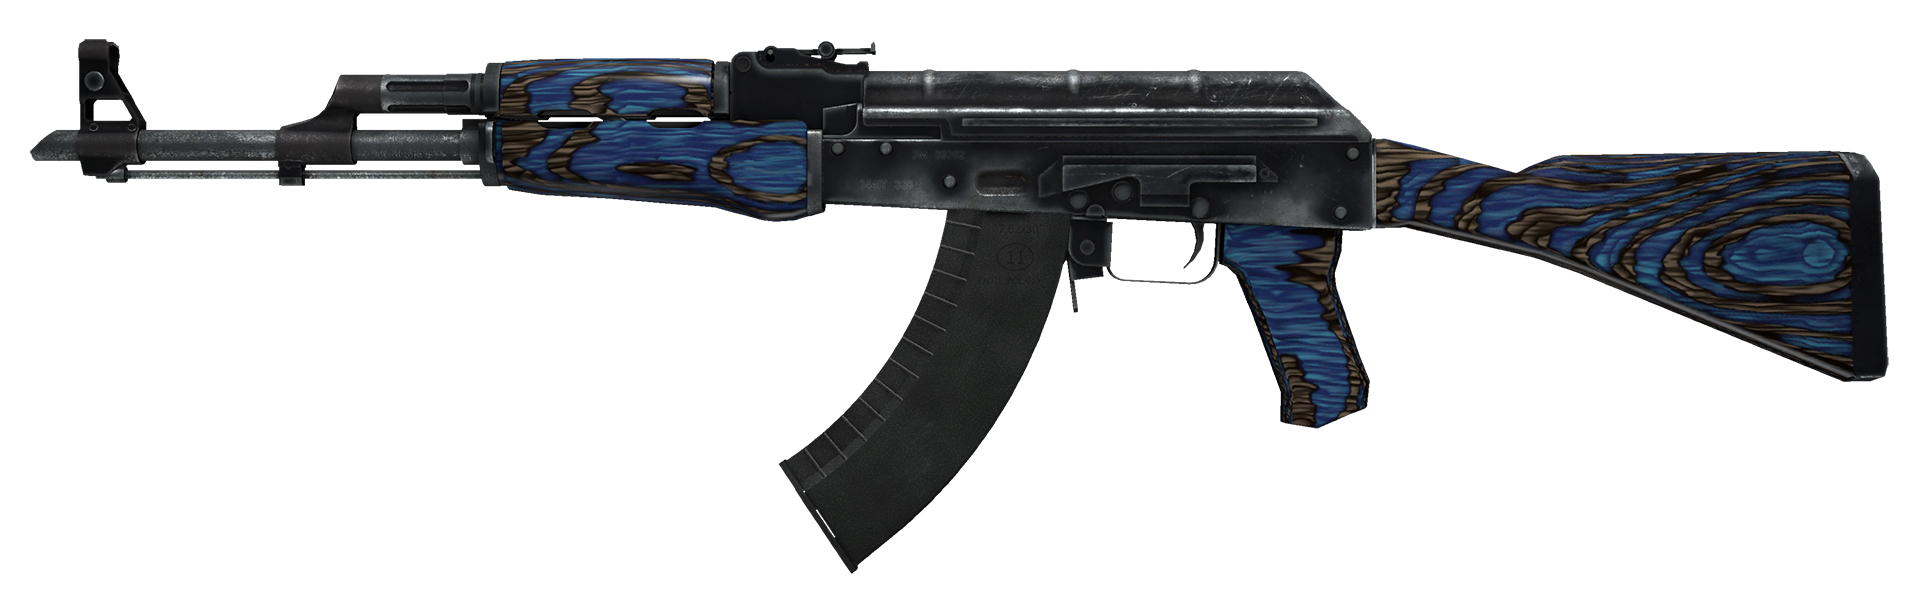 AK-47 Blue Laminate Large Rendering